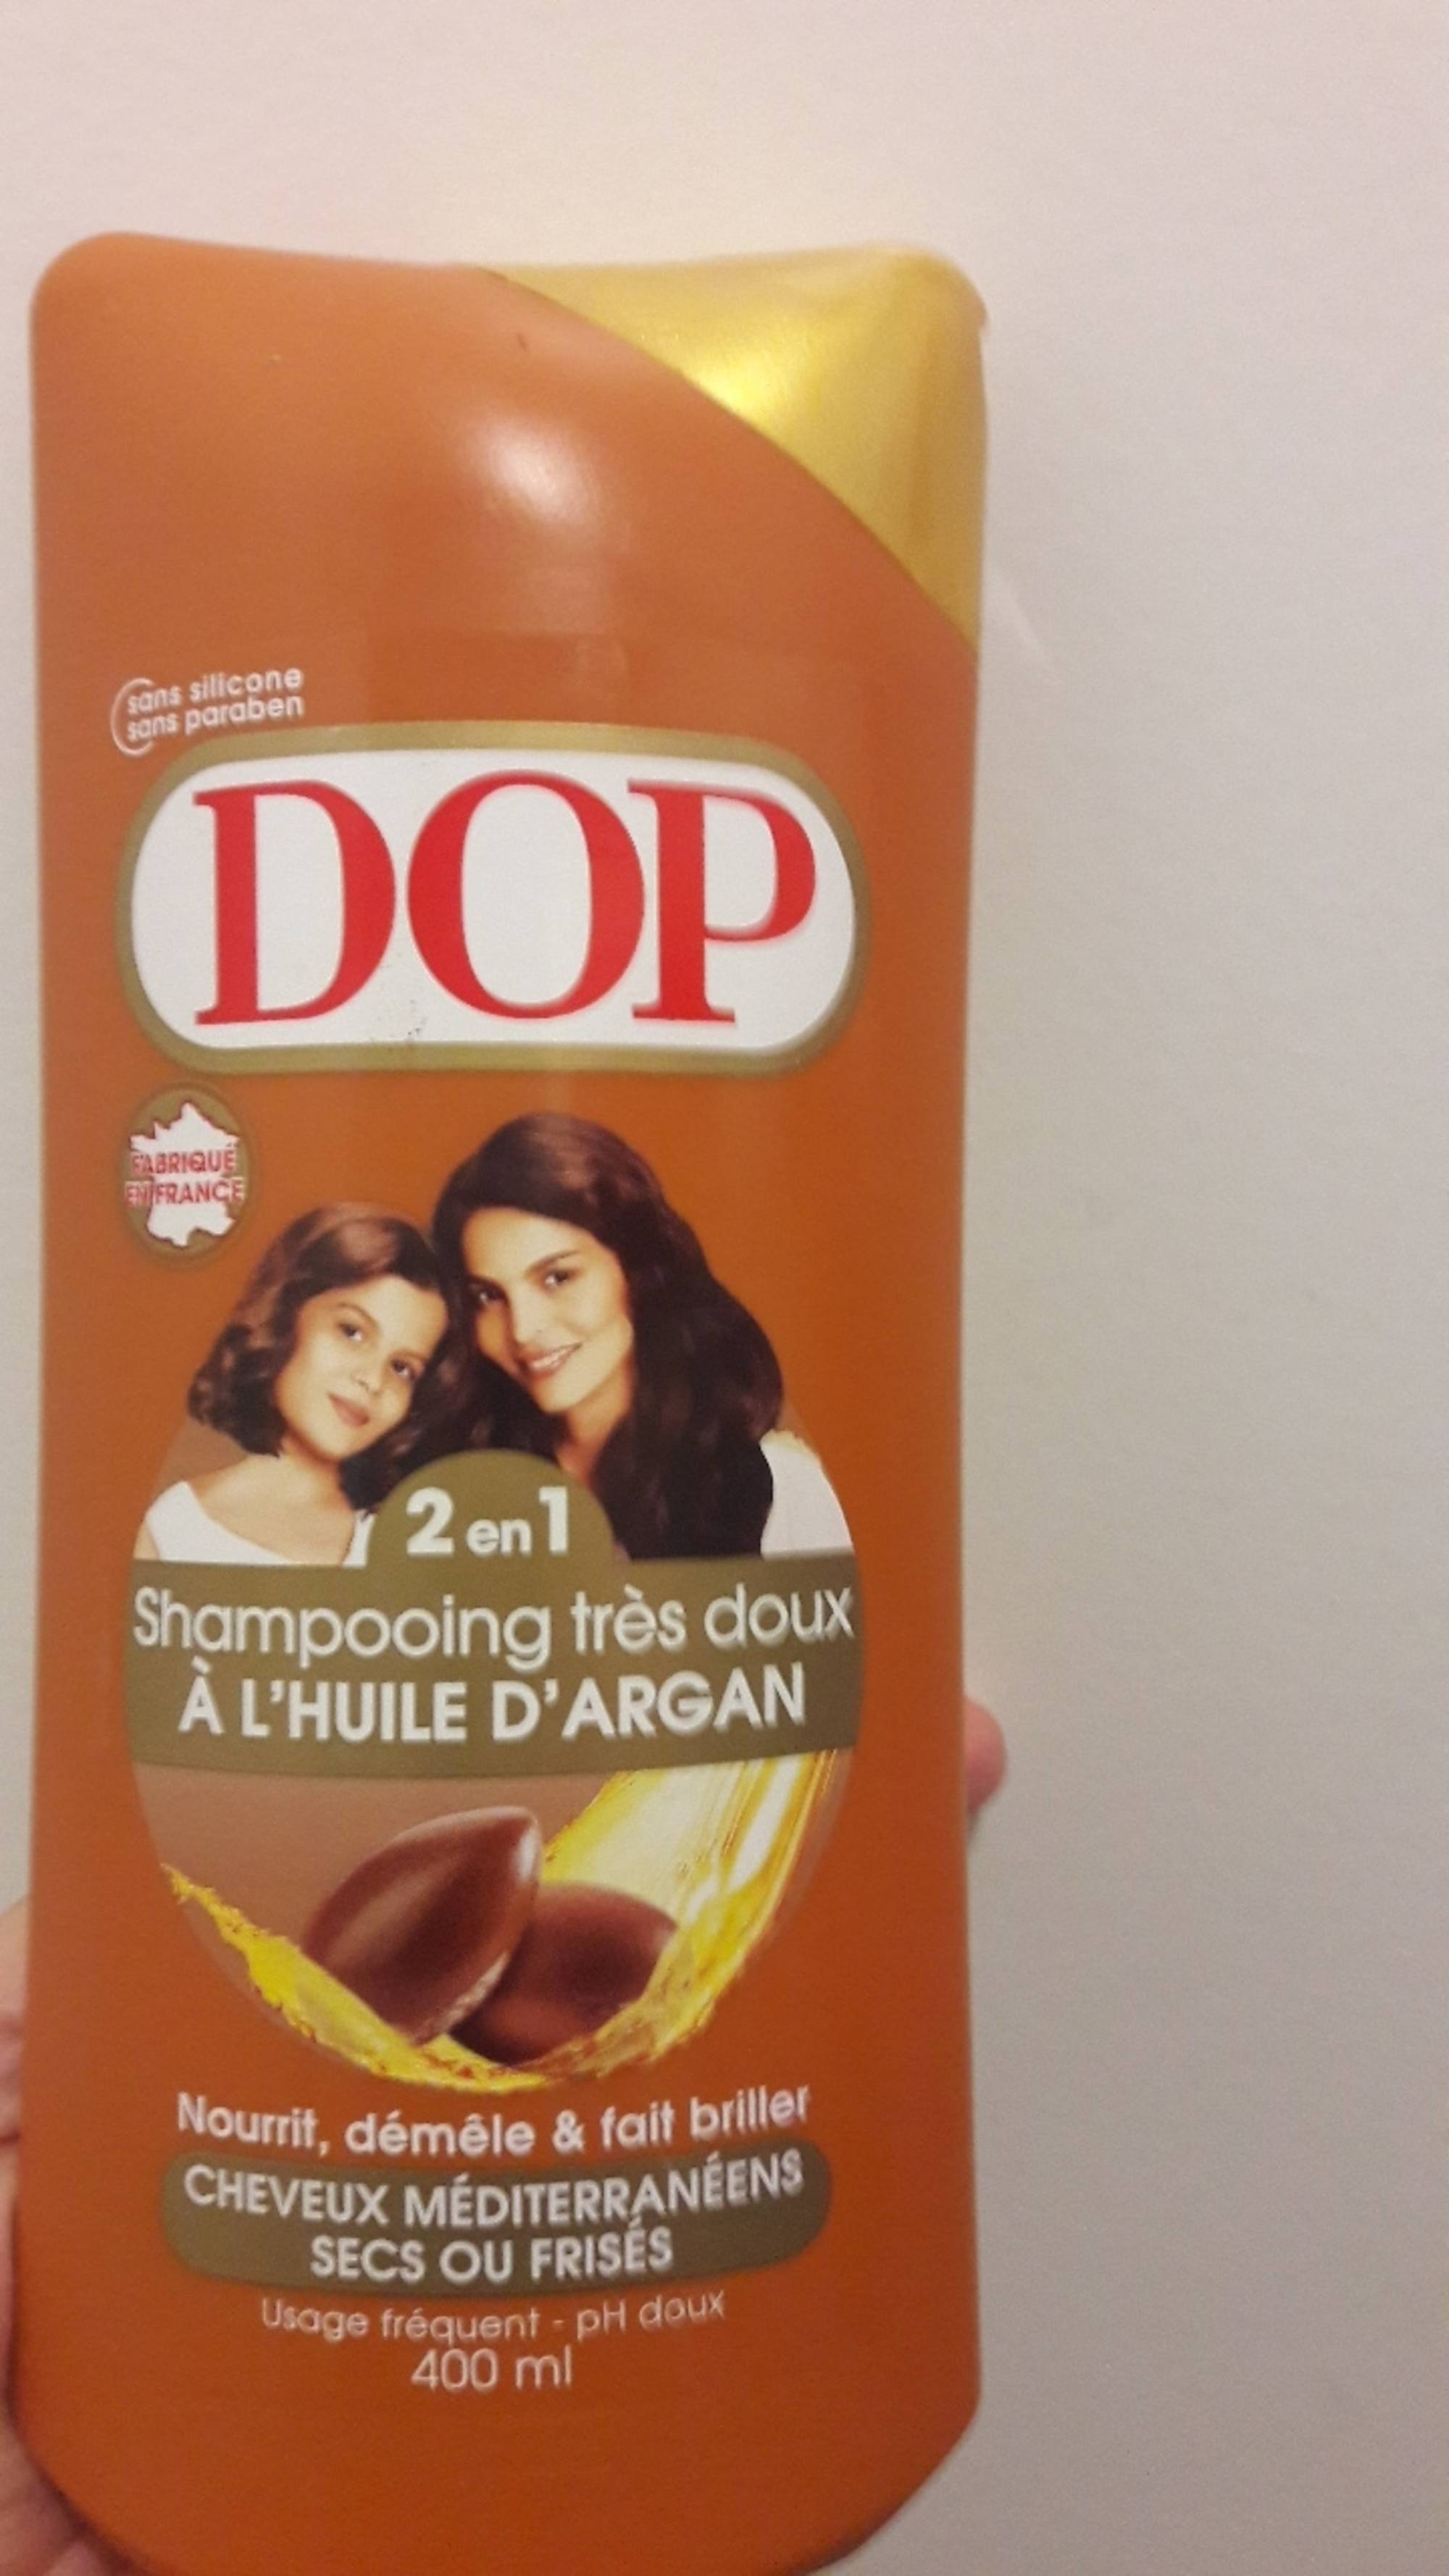 DOP - Shampooing très doux à l'huile d'argan 2 en 1